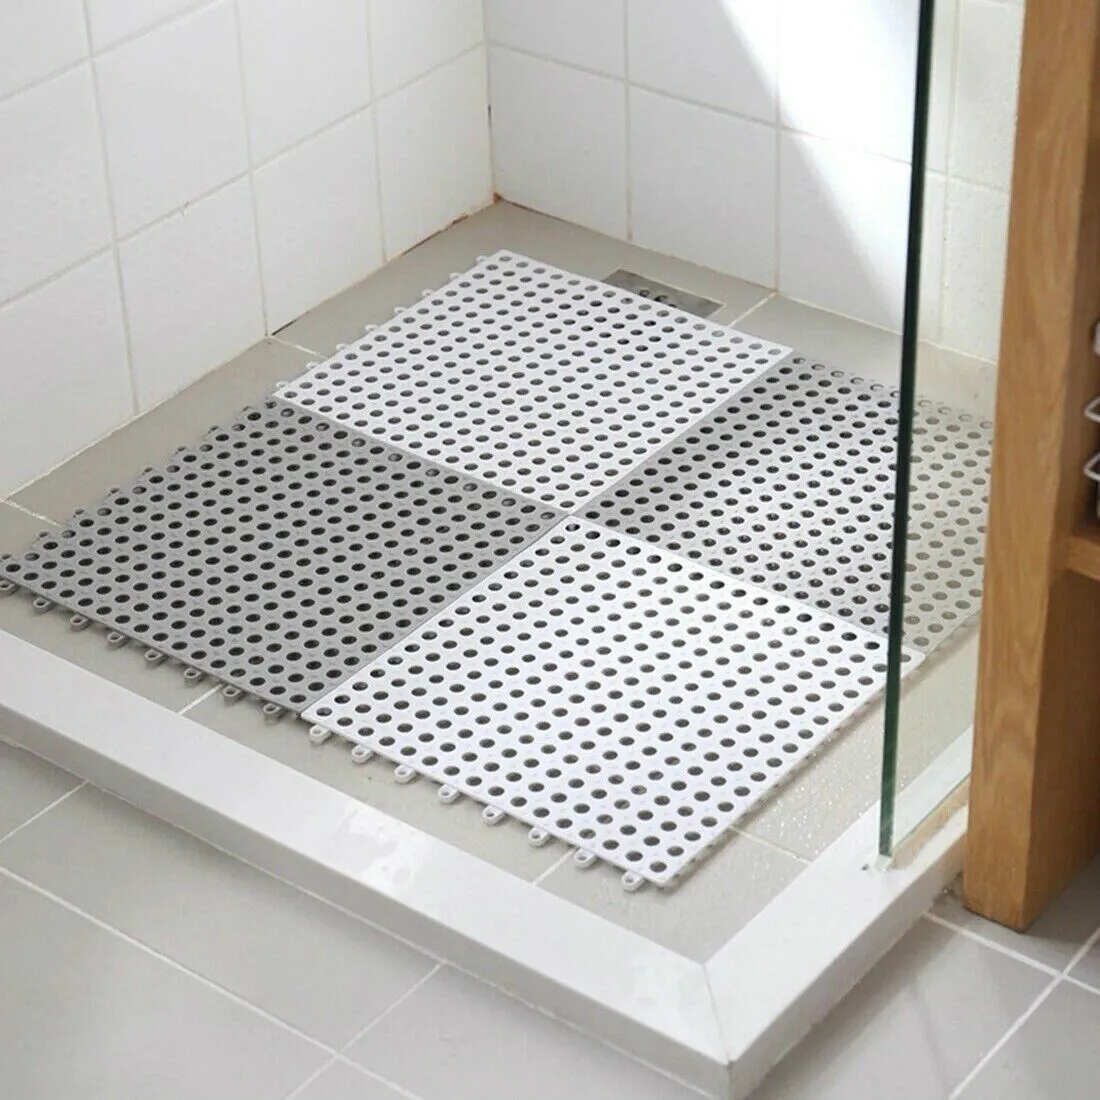 Sử dụng thảm nhựa chống trơn trượt cho khu vực tắm